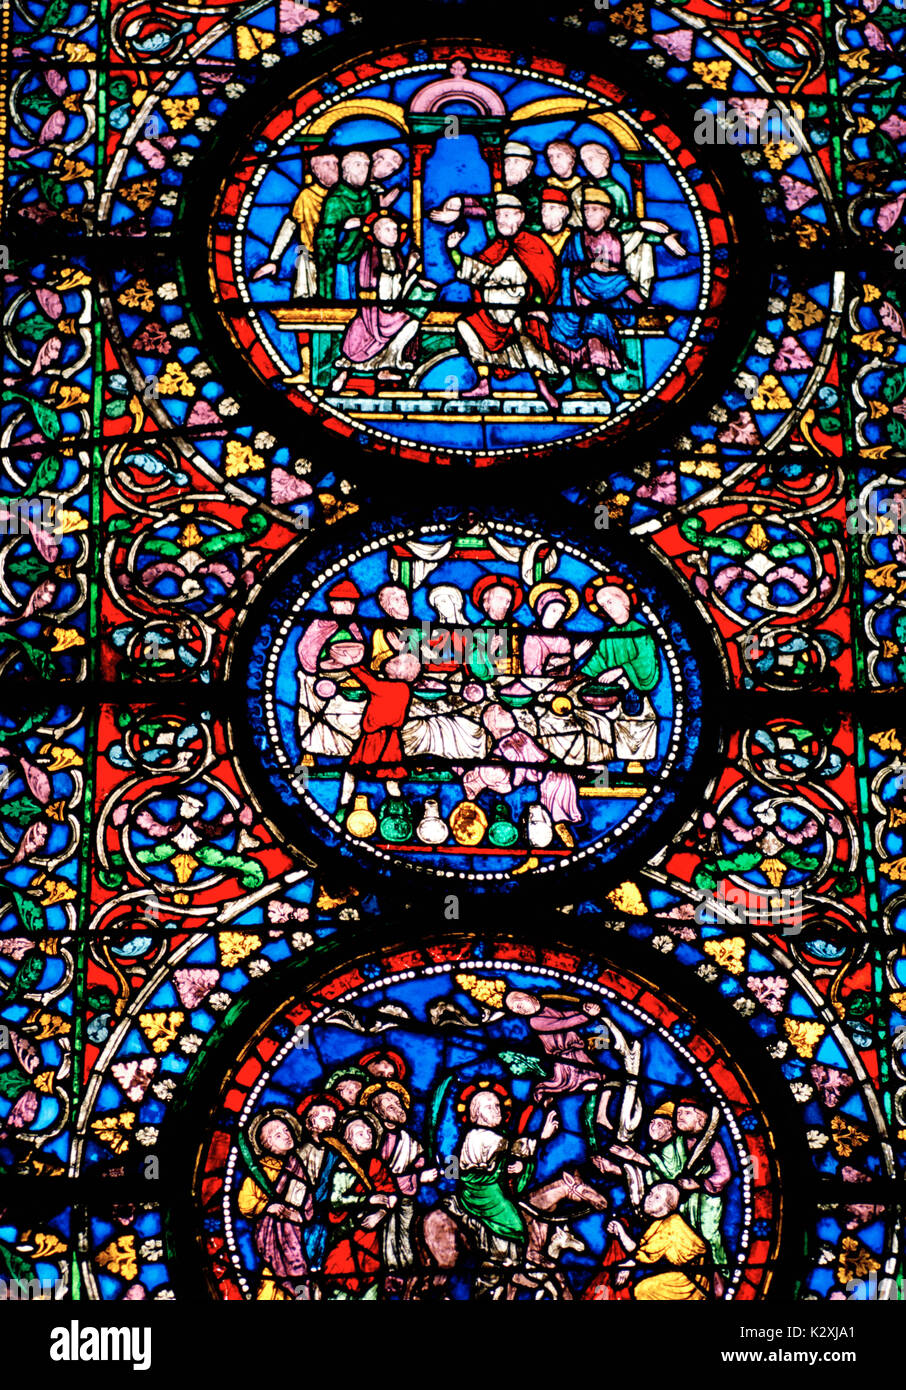 Finestra di vetro colorato nella cattedrale di Canterbury nella città di Canterbury nel Kent in Inghilterra in Gran Bretagna nel Regno Unito Regno Unito Europa. il vetro macchiato Foto Stock